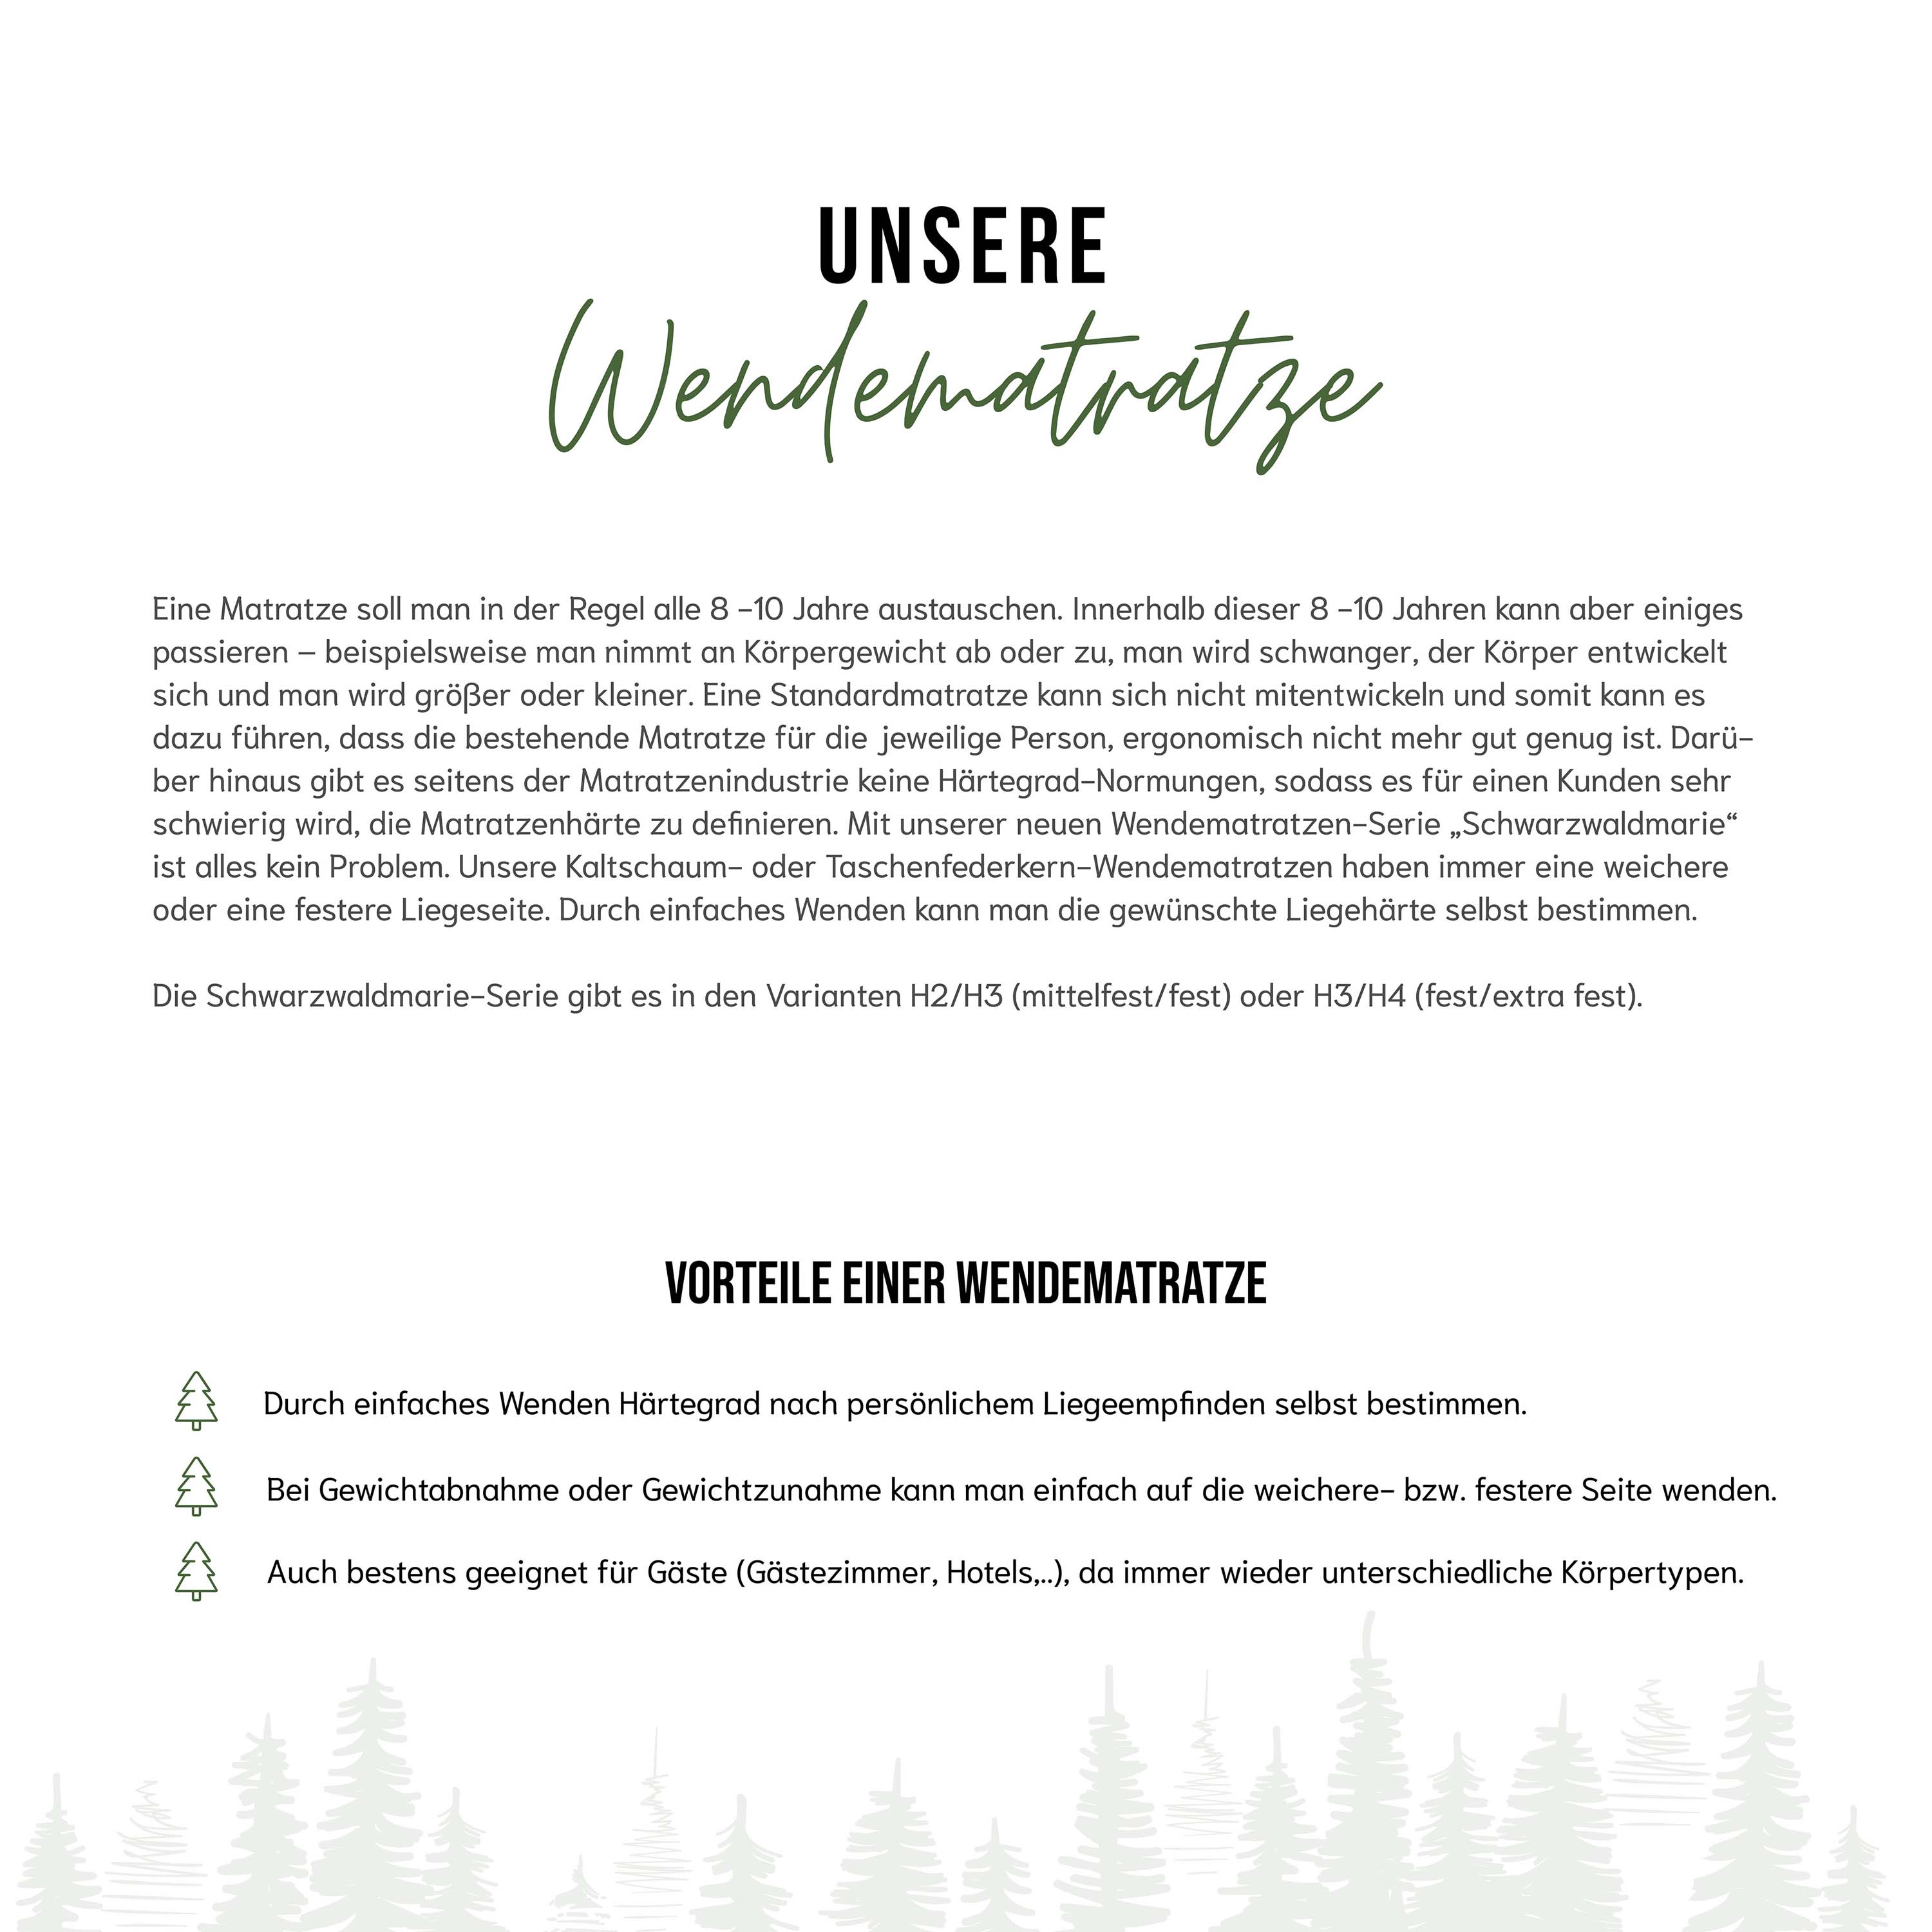 Schwarzwaldmarie Anna – 7-Zonen-Taschenfederkern mit 1000 Federn, Wendefunktion und Viscoauflage